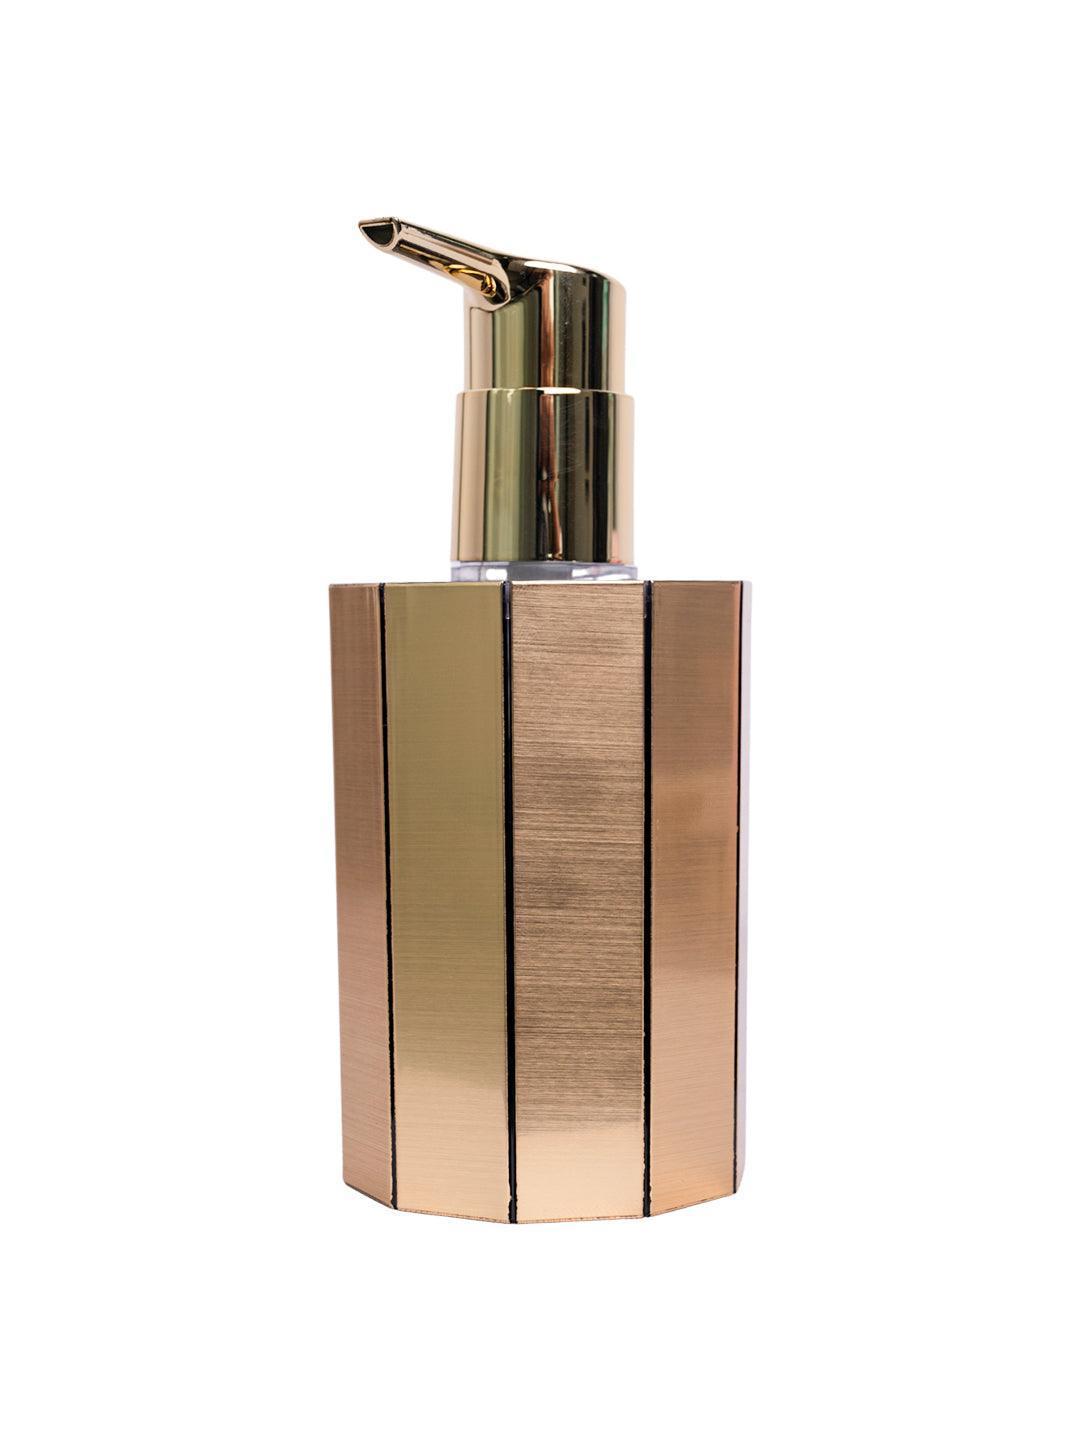 Stylish Soap Dispenser - 380Ml, Golden - MARKET 99